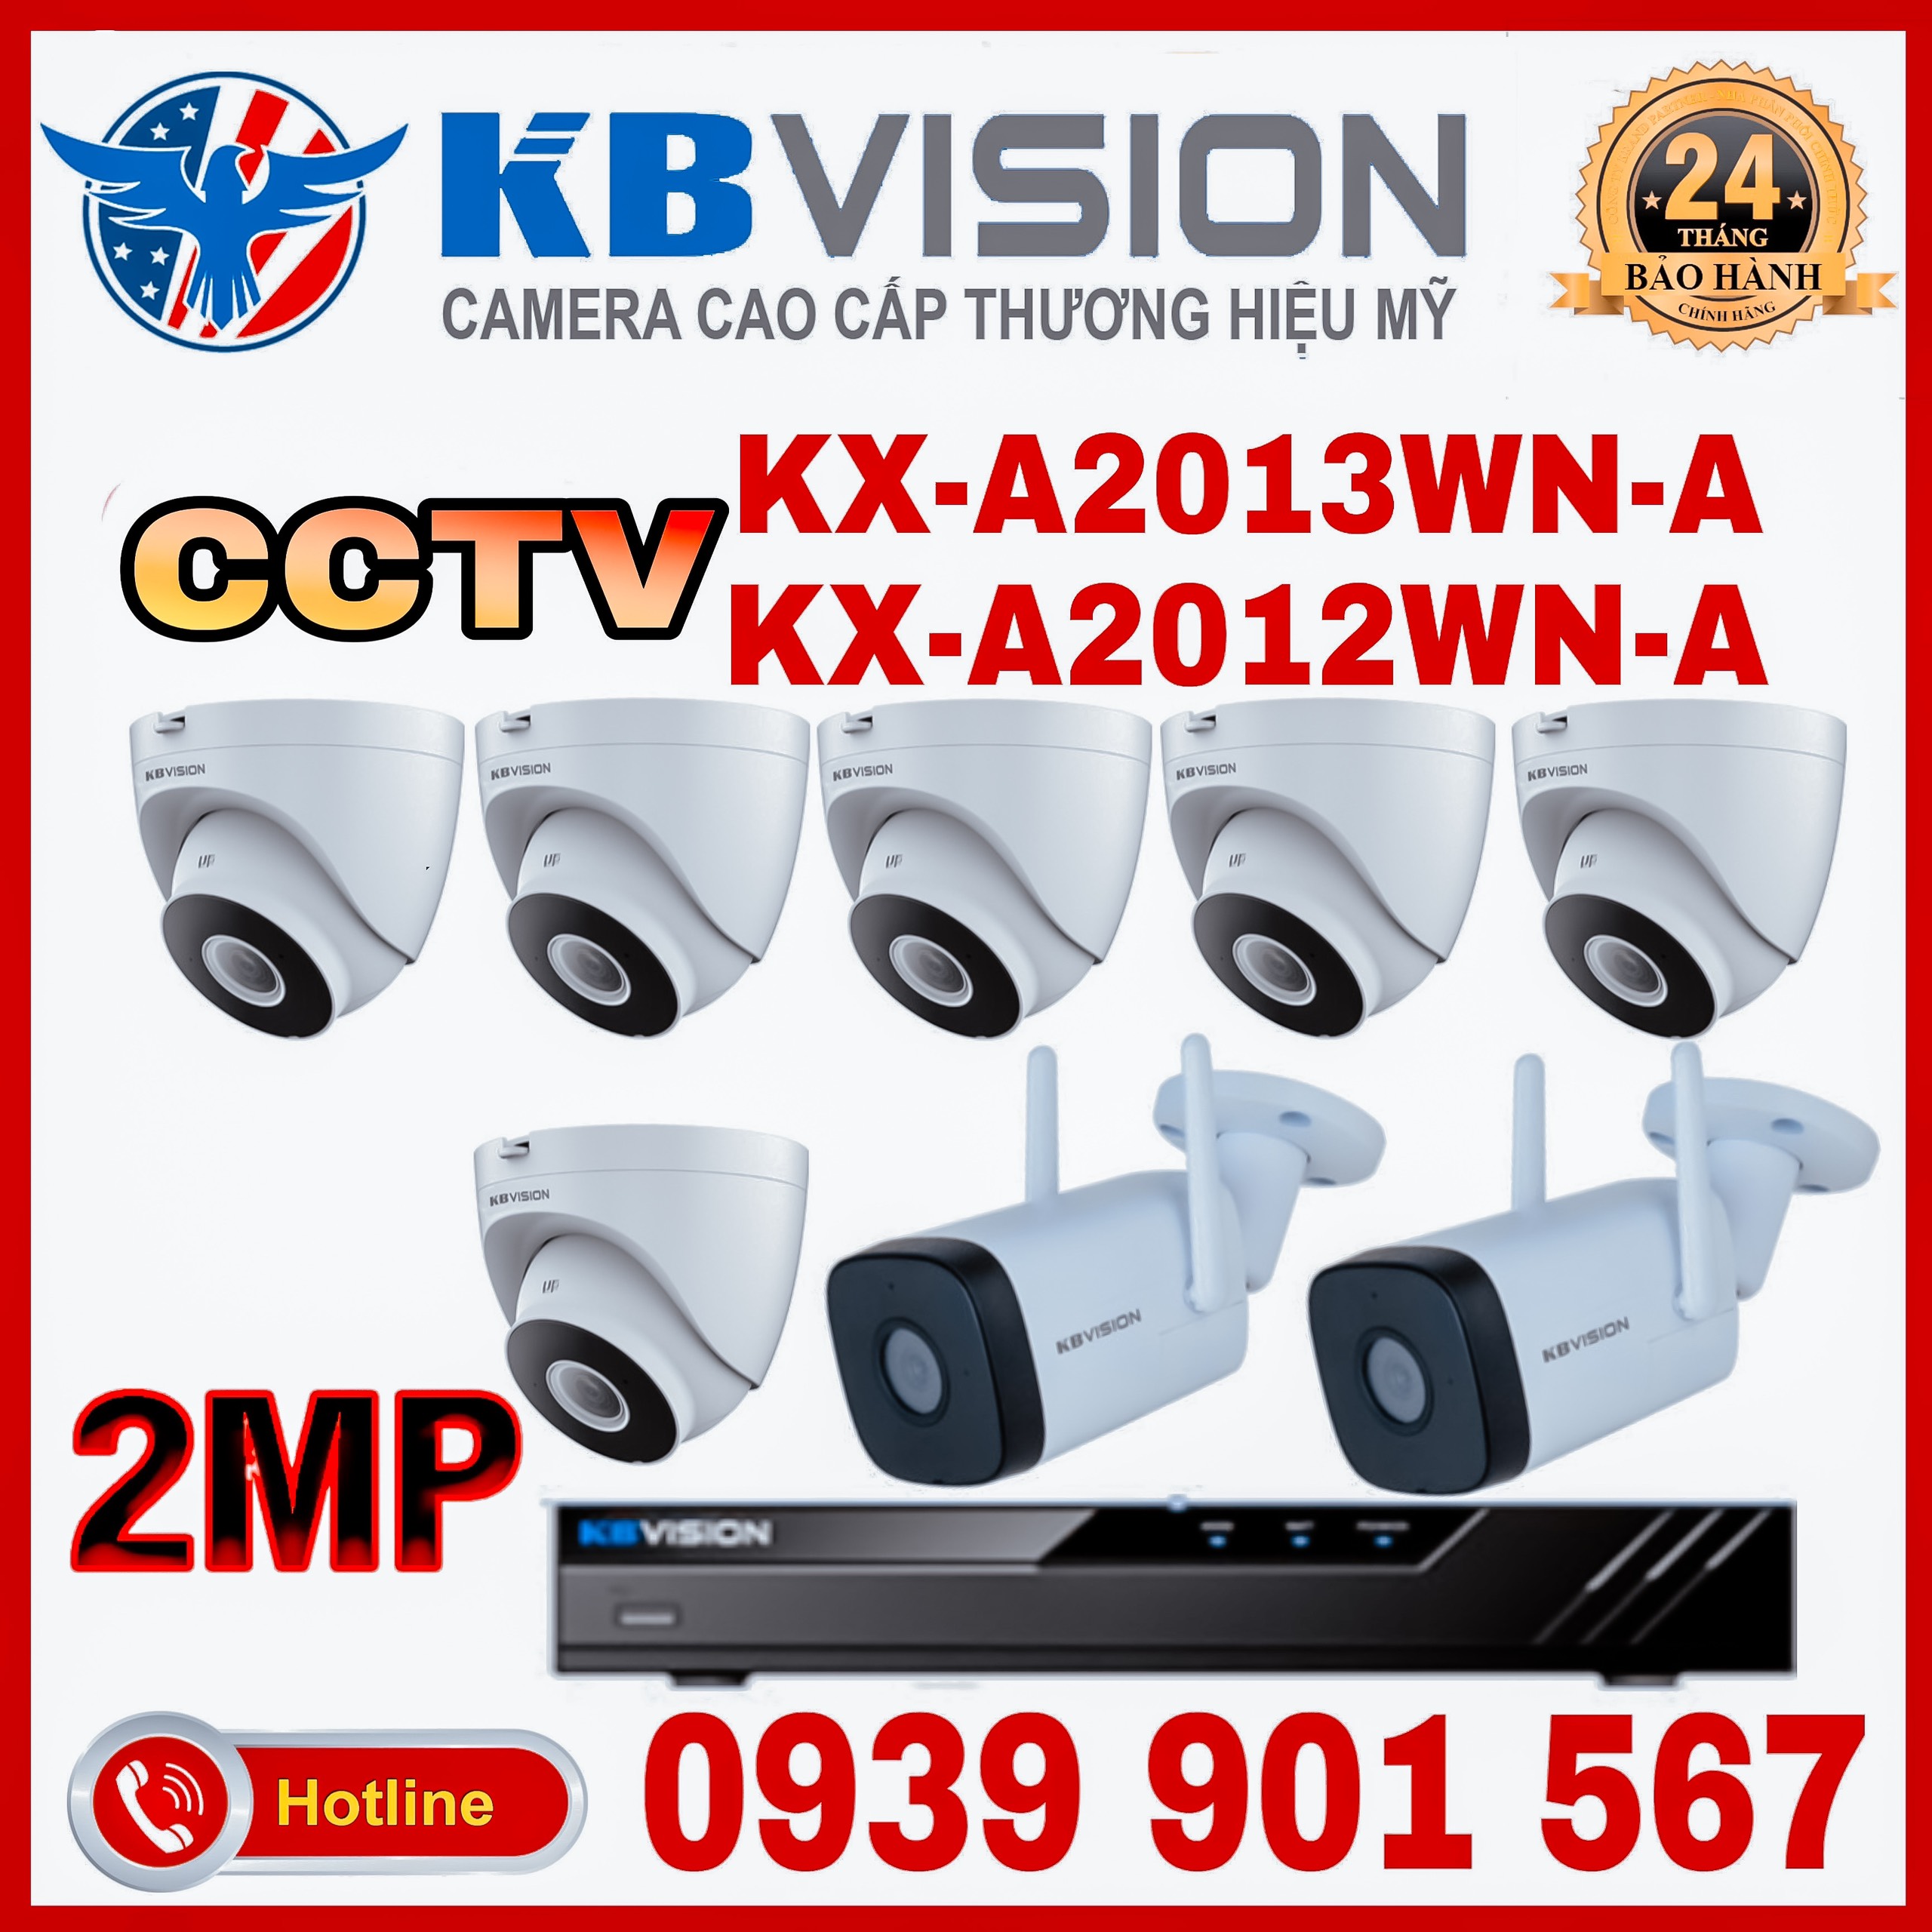 Lắp đặt trọn bộ 8 camera quan sát KBVISION CCTV-A2012WN